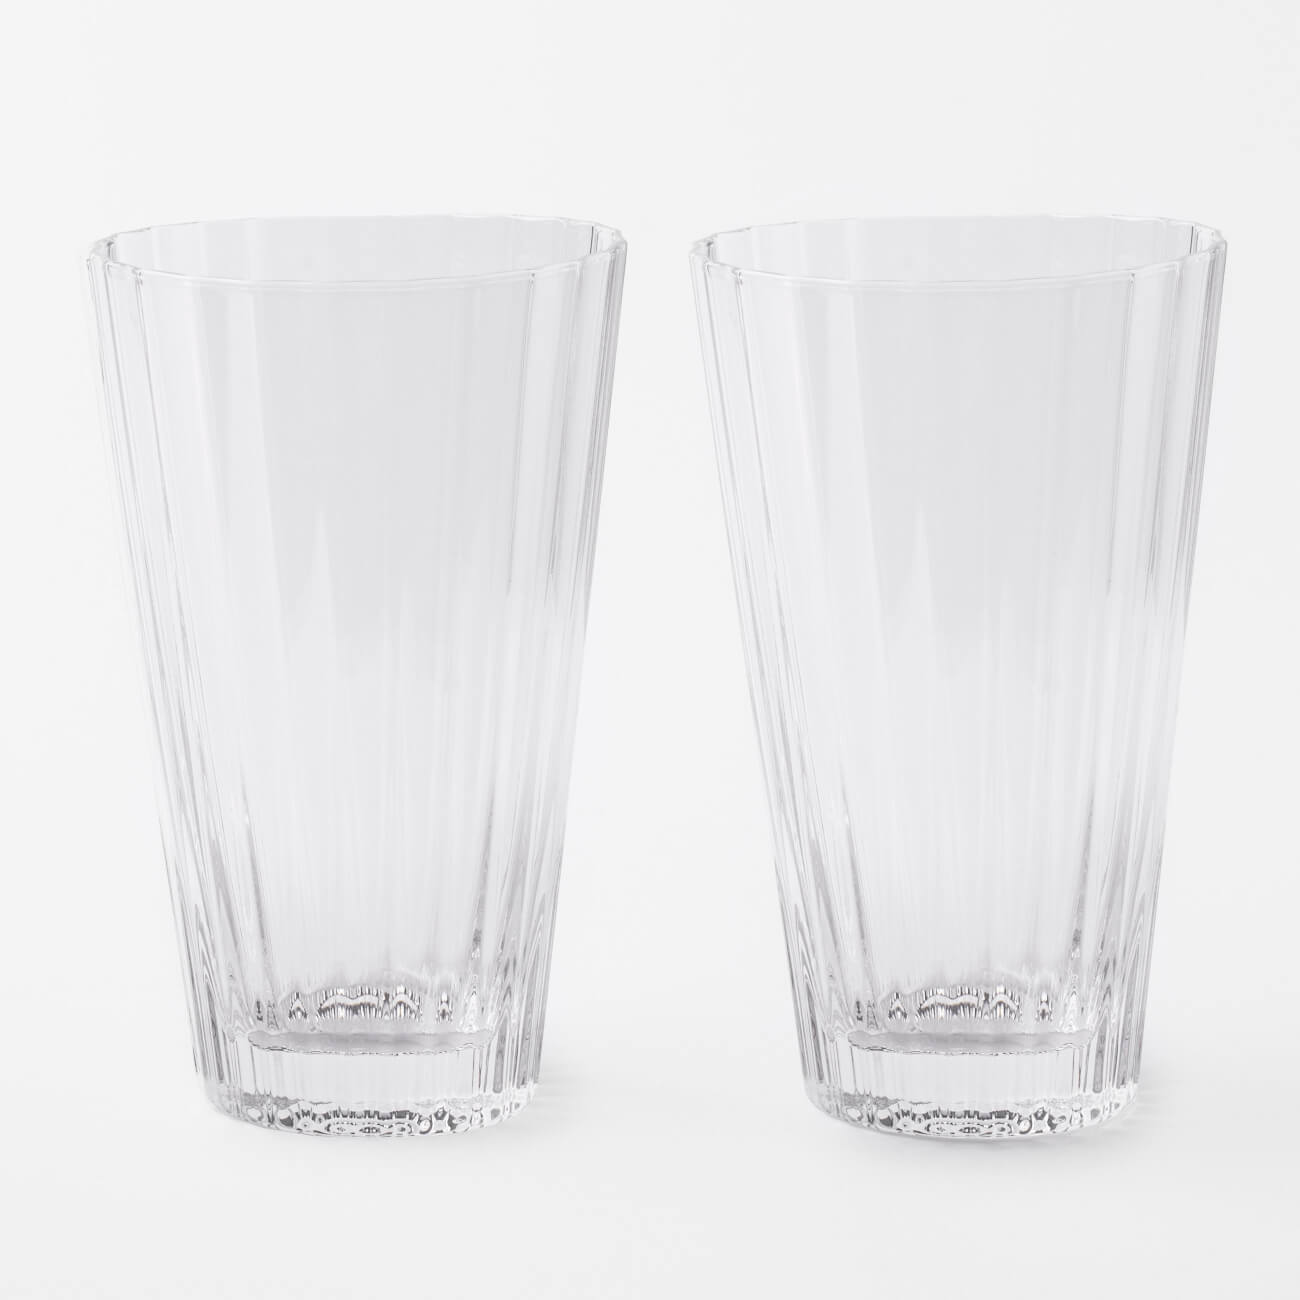 Glass, 400 ml, 2 pcs, glass, Palagoni изображение № 1